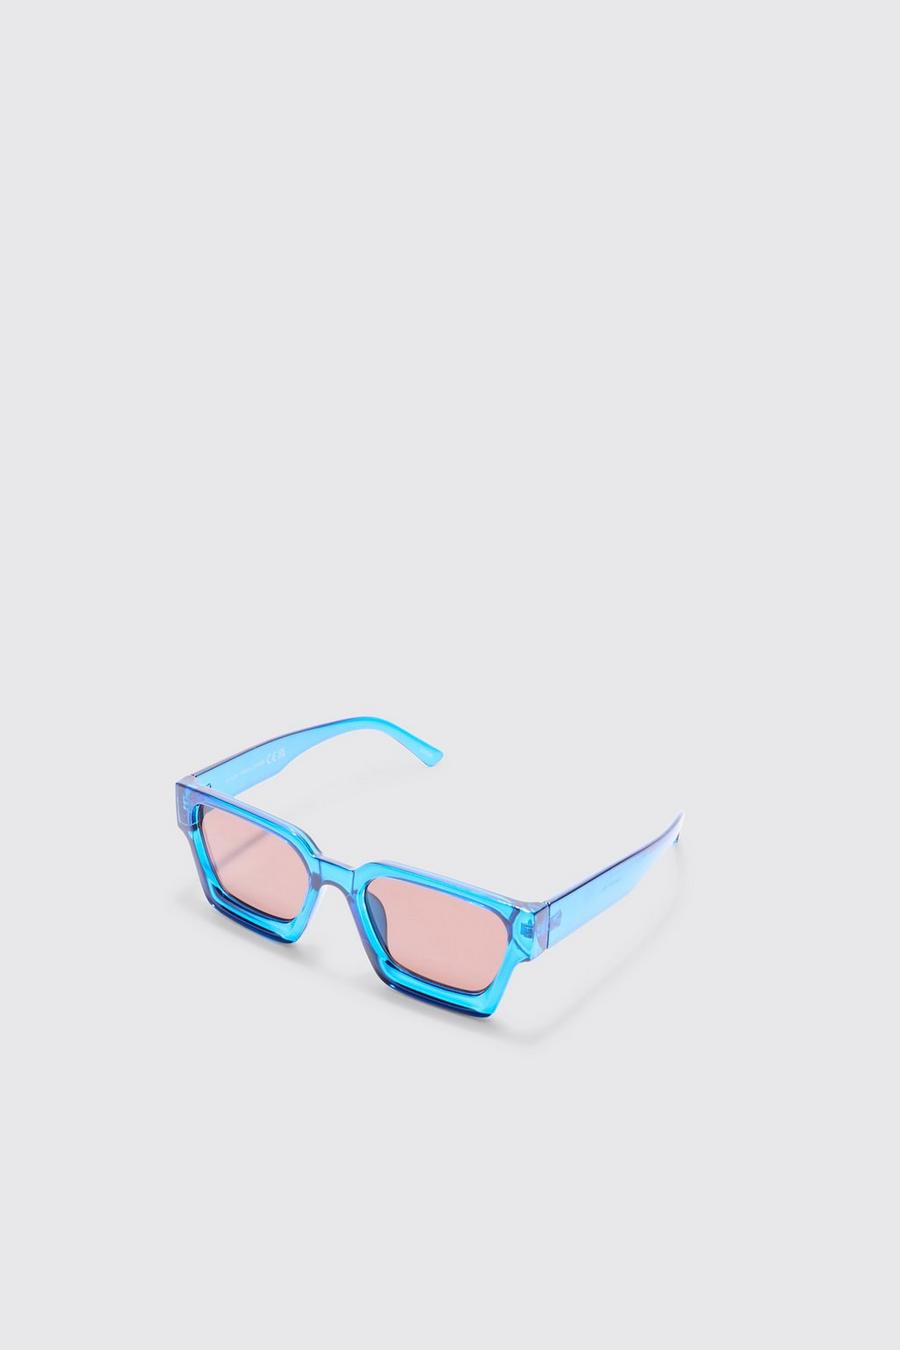 Plastic Retro Sunglasses In Blue